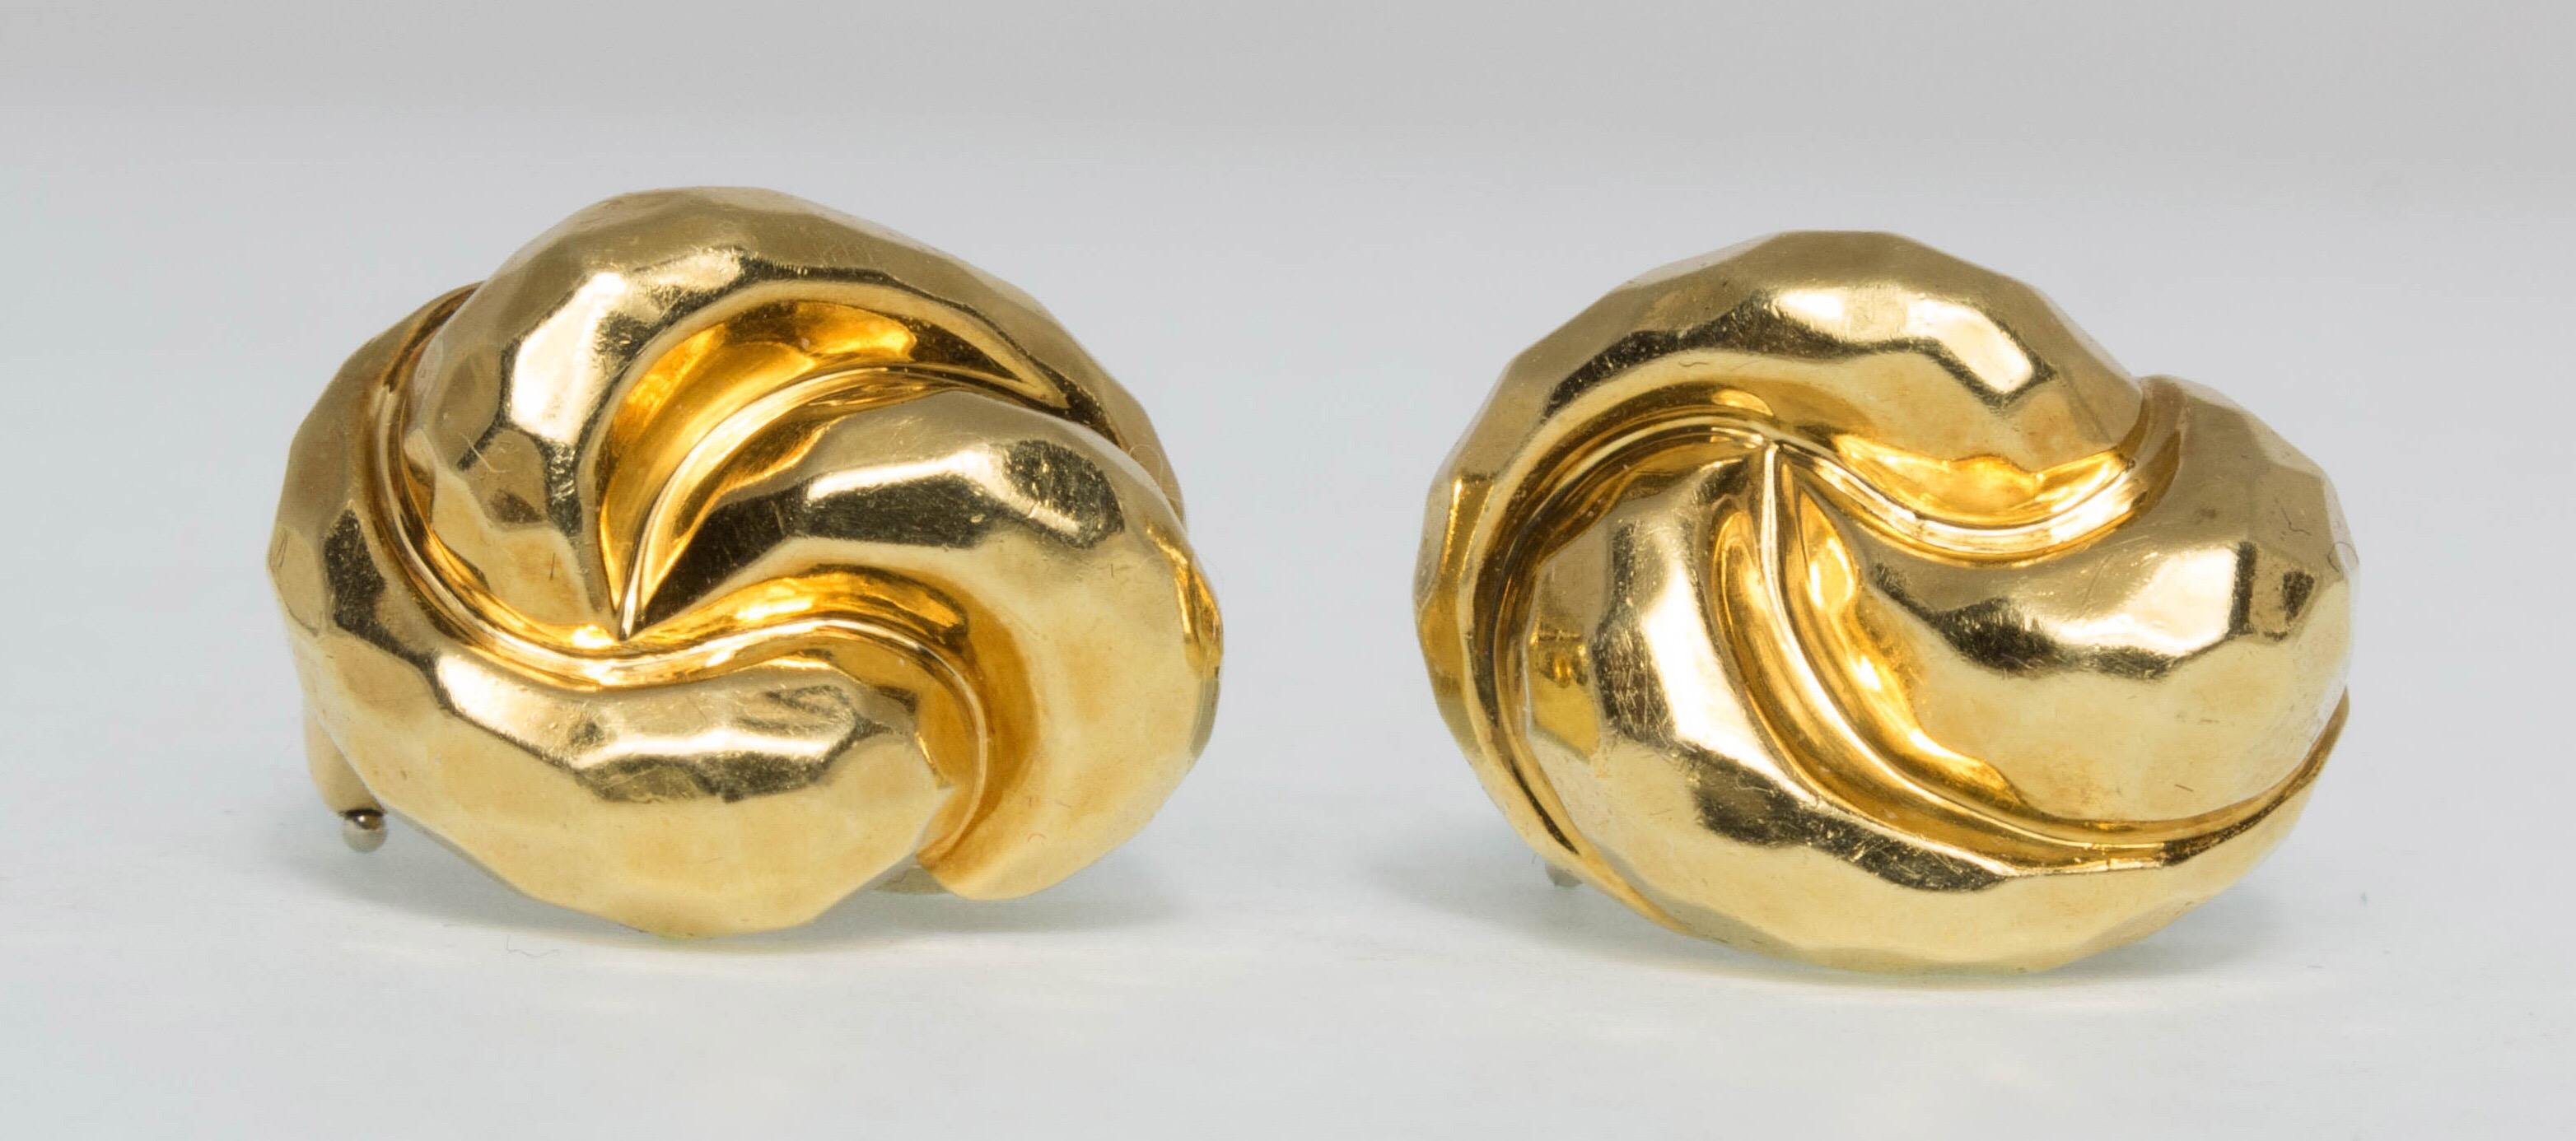 Simple, élégante et facile à porter, cette paire de boucles d'oreilles à clip en or jaune 18K martelé à la main est l'œuvre de Henry Dunay. Signée Dunay, estampillée 18K, 750. Numéro A5319.
Mesurait 0,75